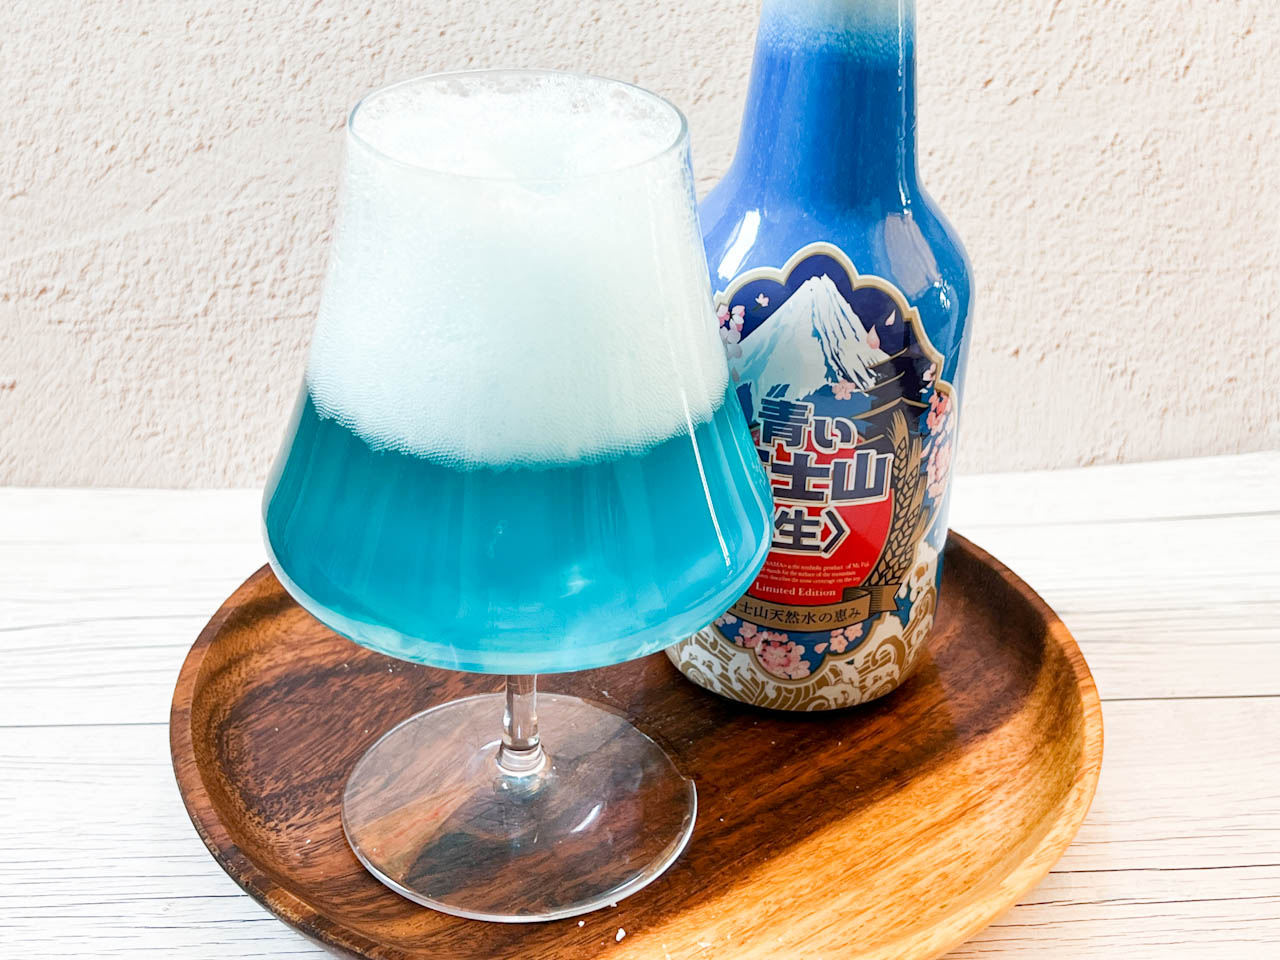 注ぎ終わると、グラスの中には青い富士山が出現！